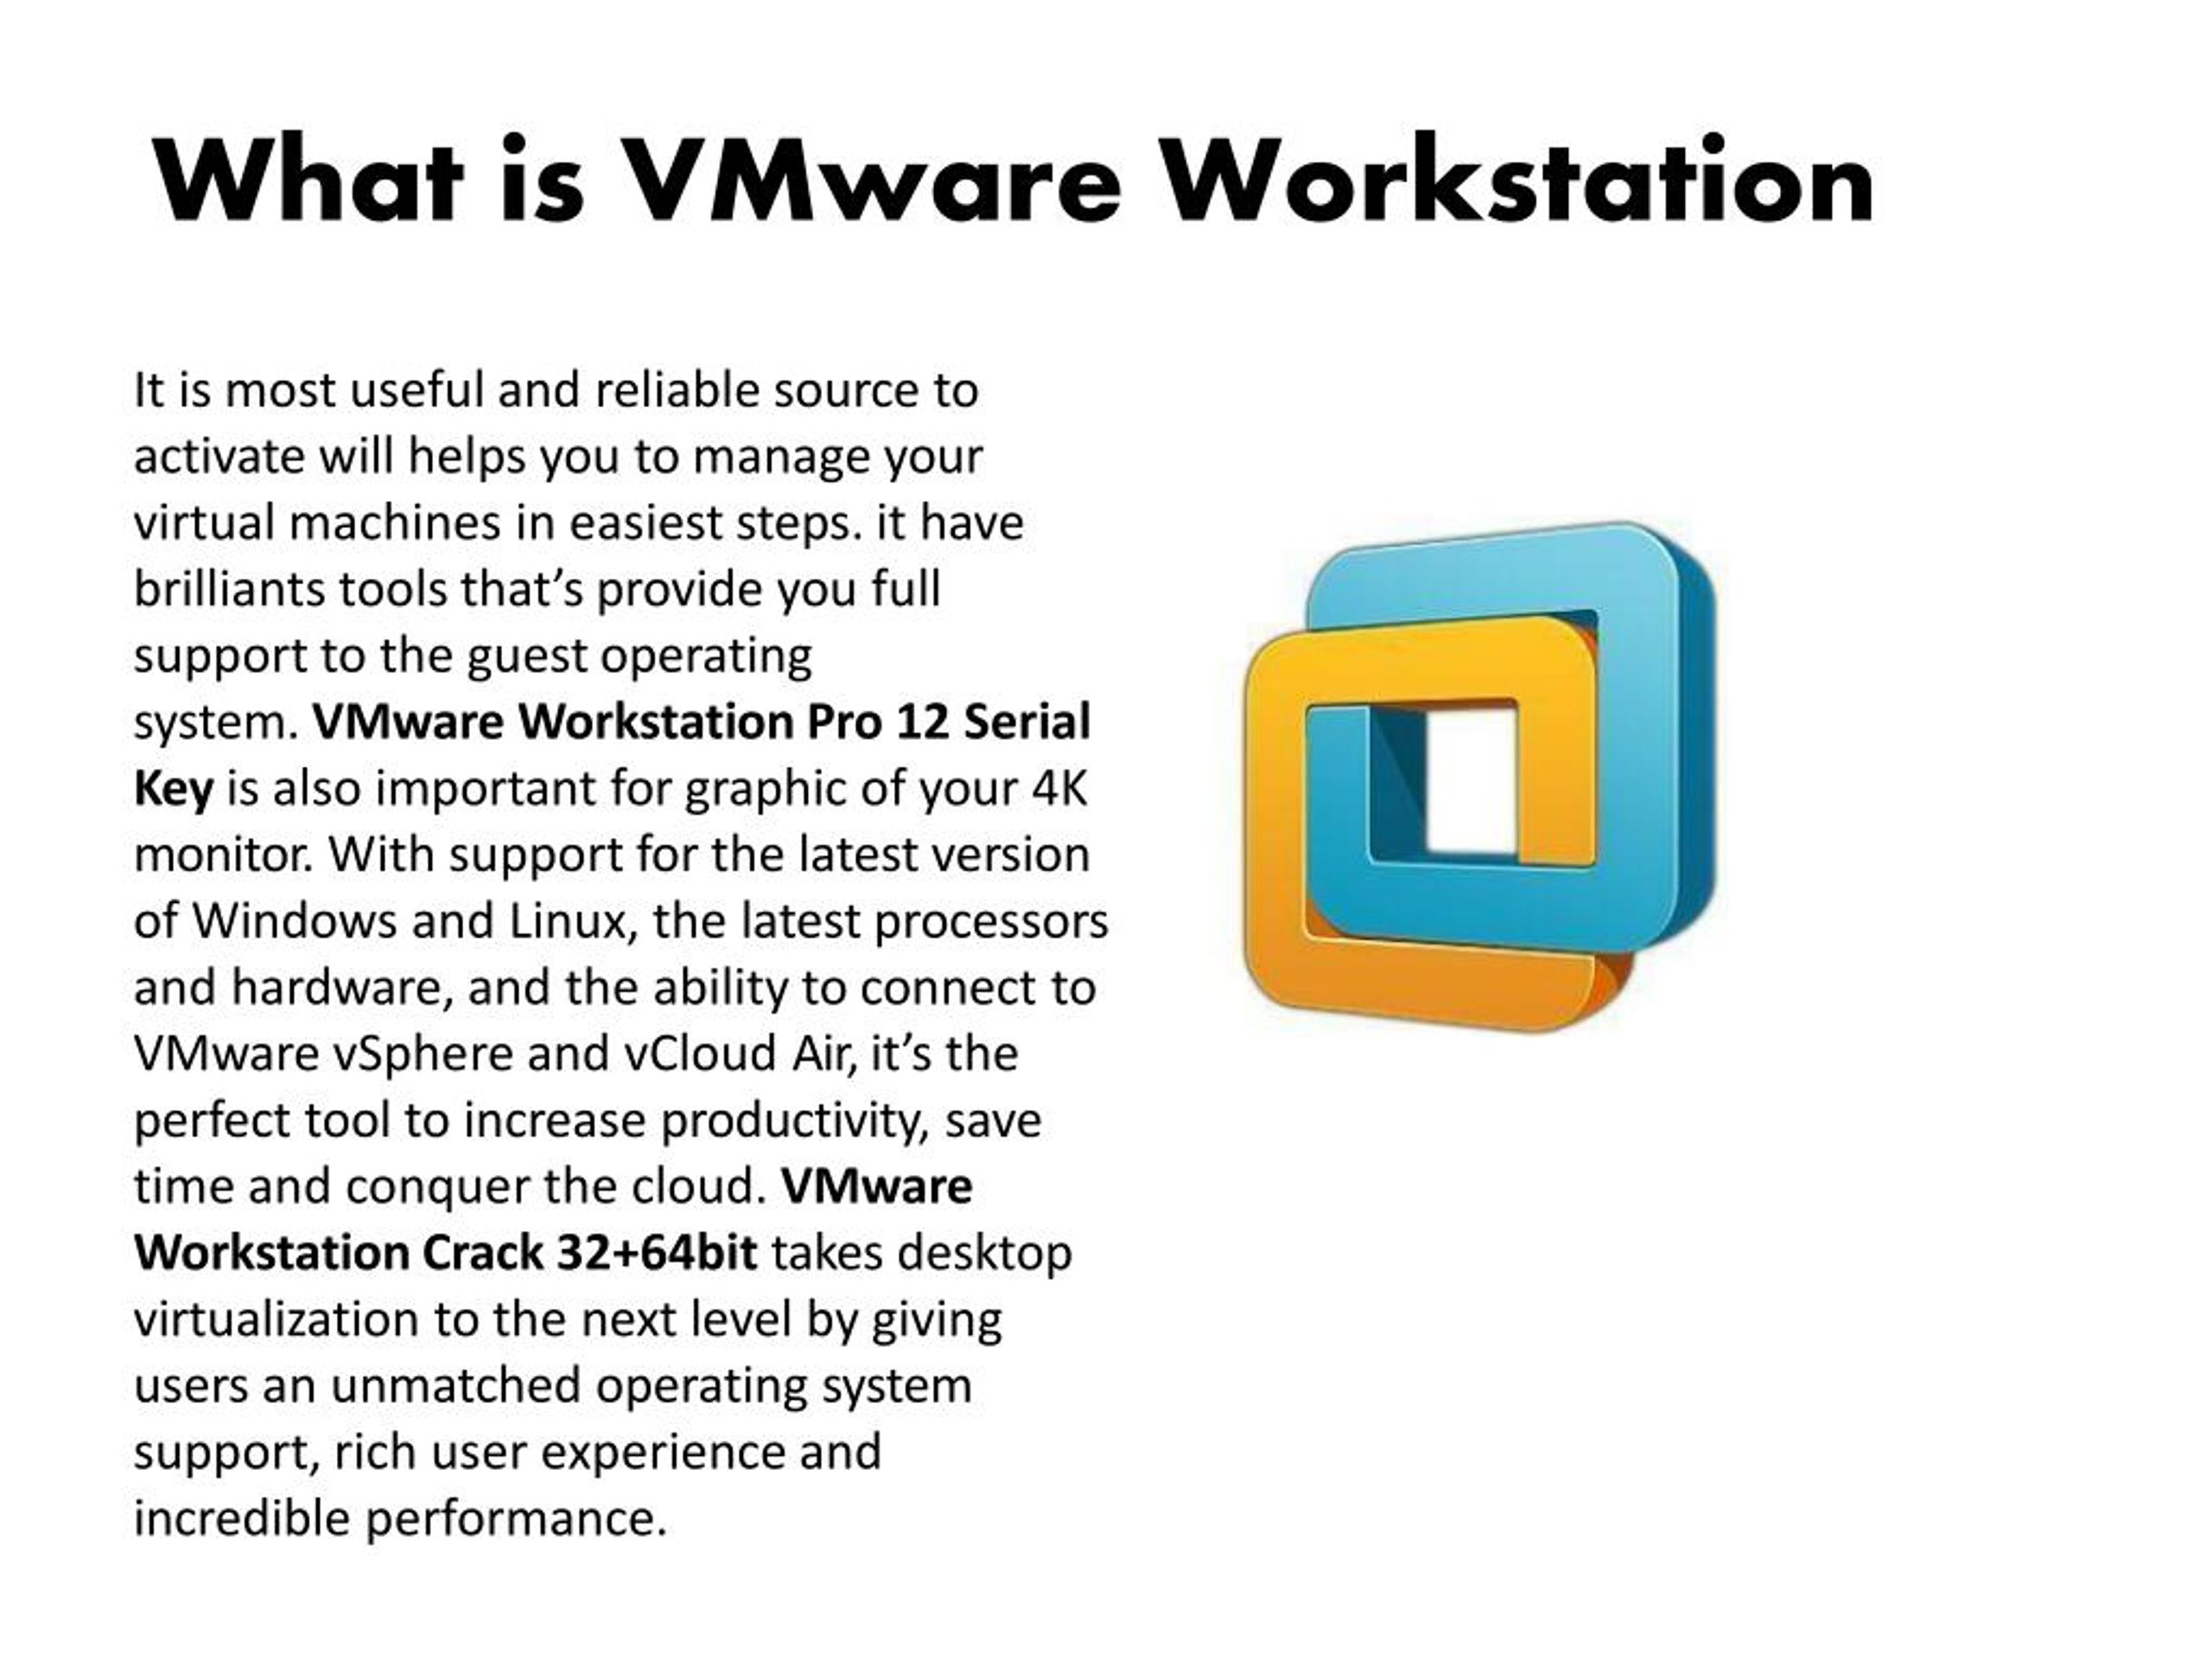 vmware workstation pro discount